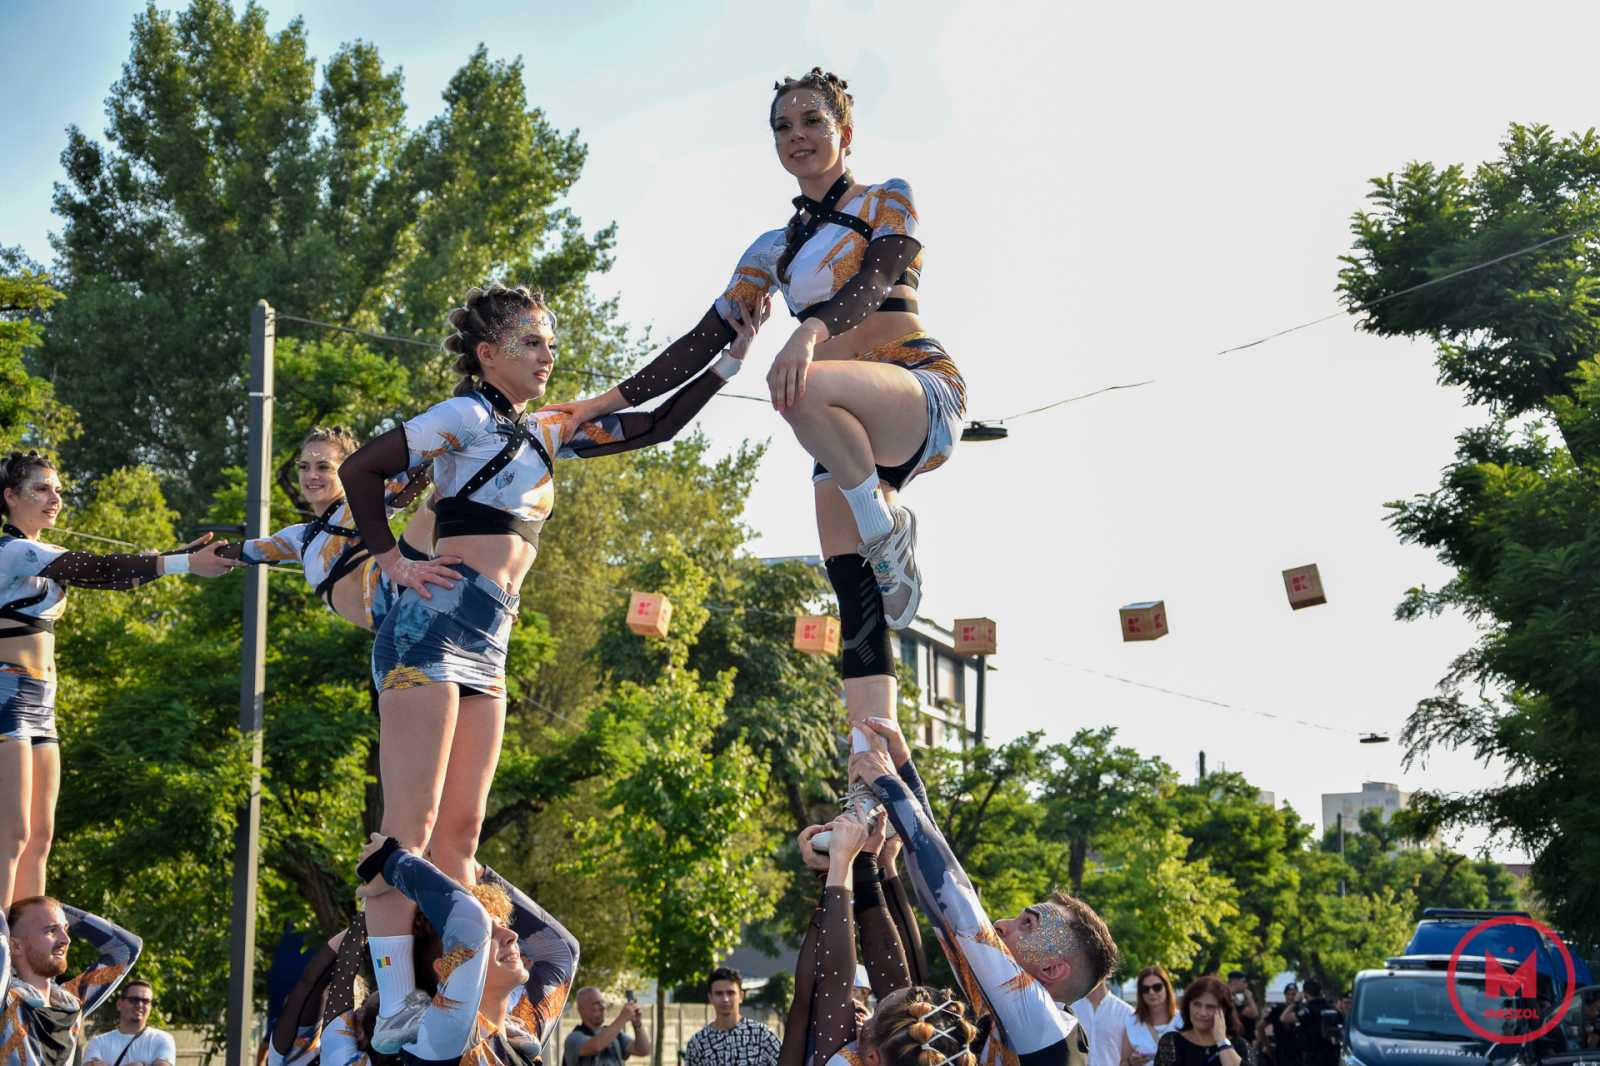 Nemzetközi akrobaták kápráztatják el bátorságukkal és trükkjeikkel a nézőket. Az artisták a fesztivál különböző részein egész nap előadták trükkjeiket, egy bátor fesztiválozót pedig a magasba is emeltek.